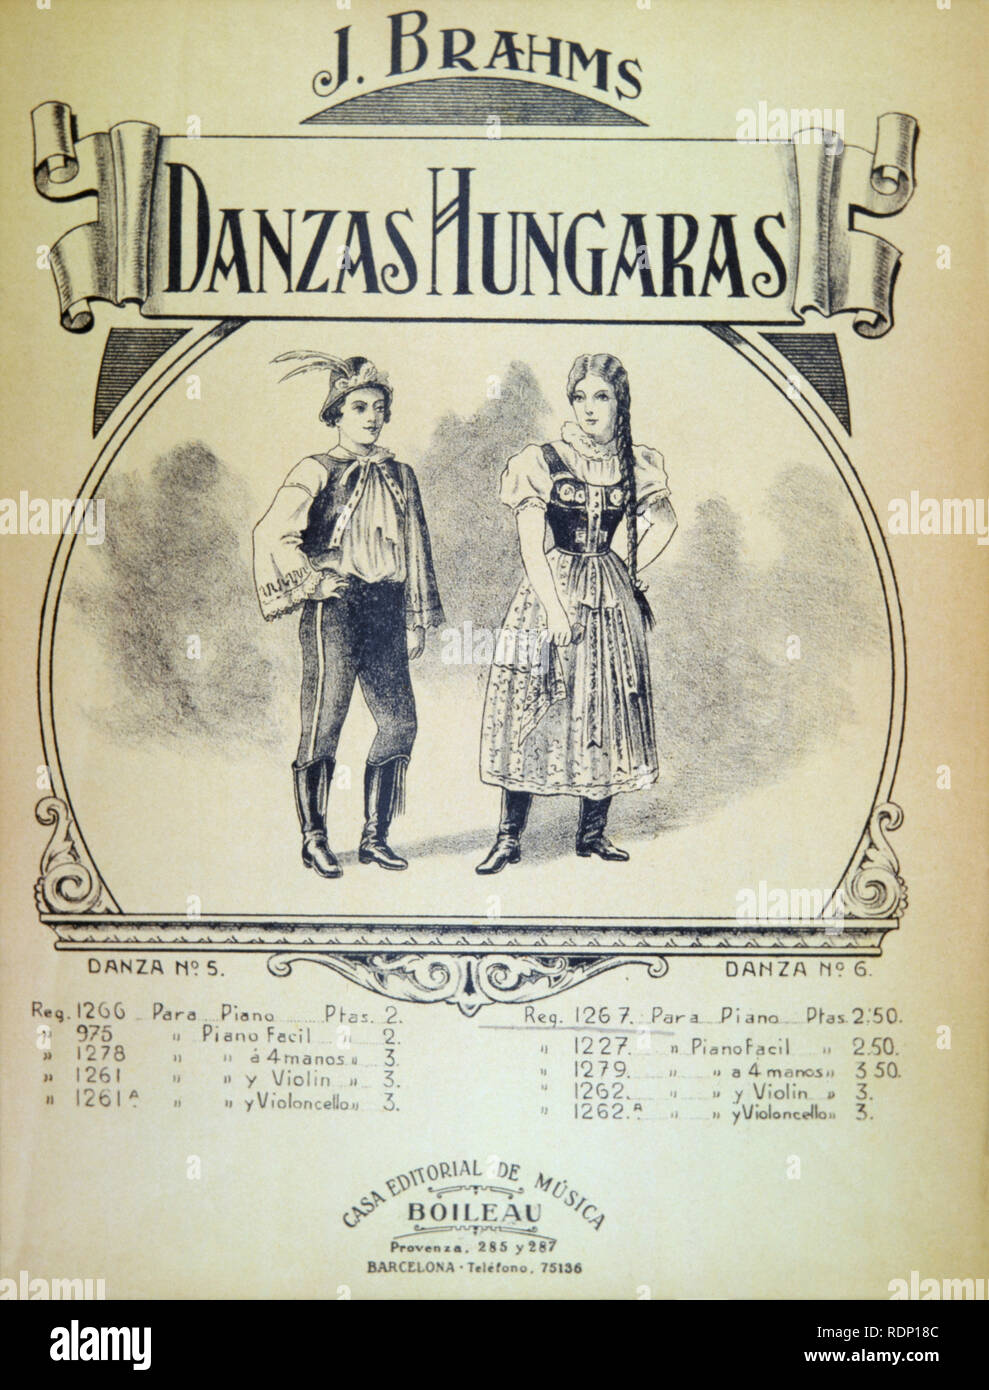 Portada de "Danzas Húngaras" del compositor Johannes Brahms (Hamburgo, 1833-Viena, 1897). Editada en Barcelona hacia 1910. Stock Photo